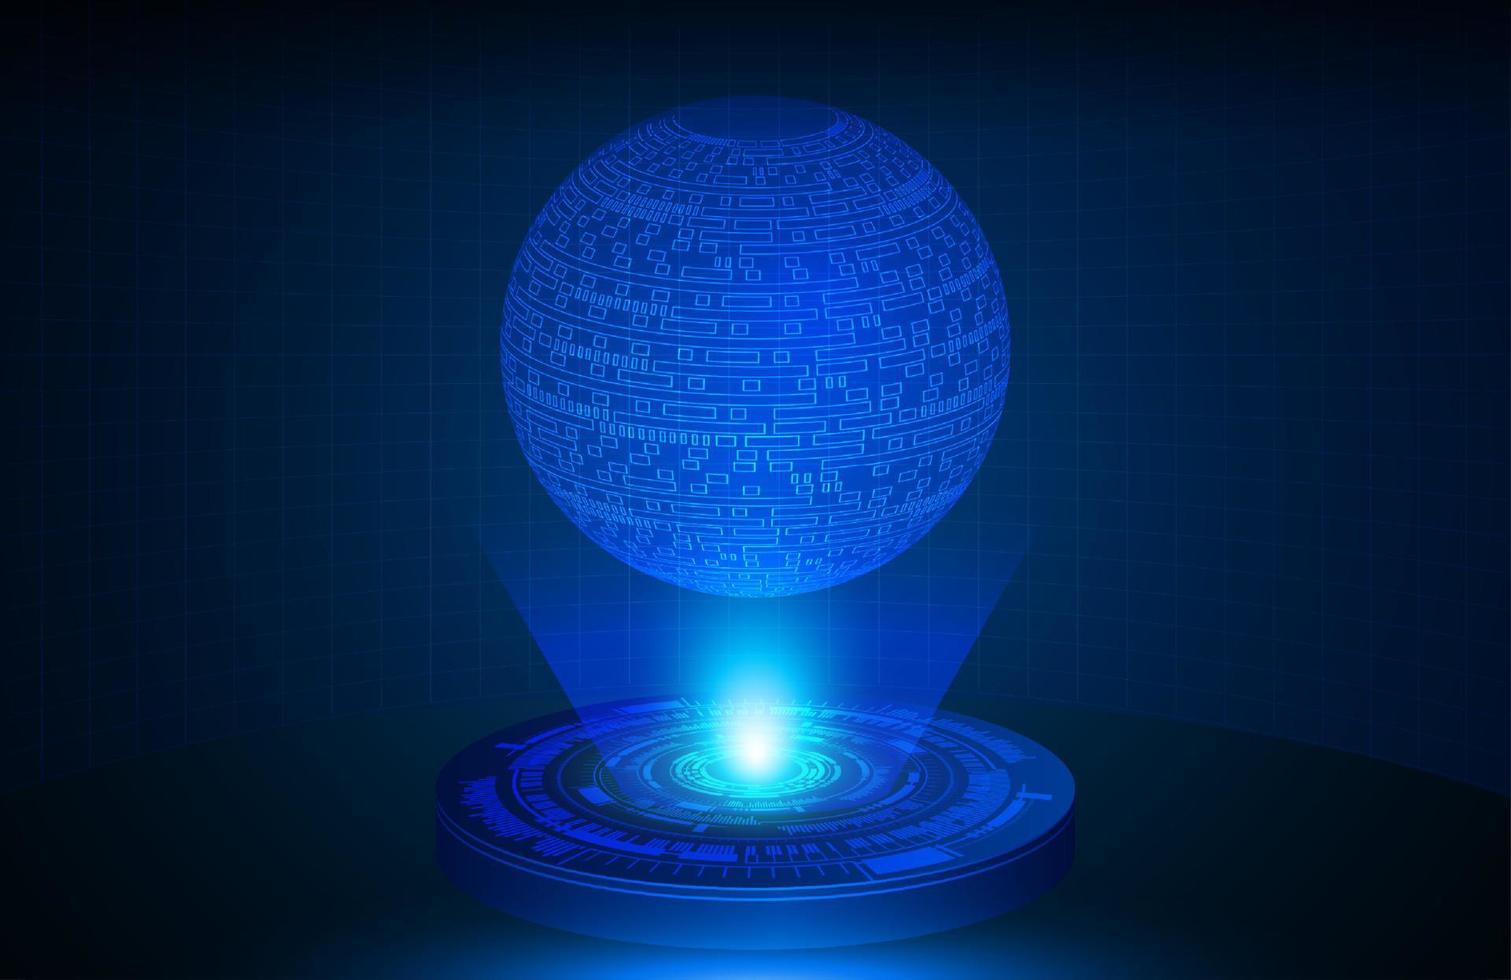 Globus holografischer Projektor auf technologischem Hintergrund vektor